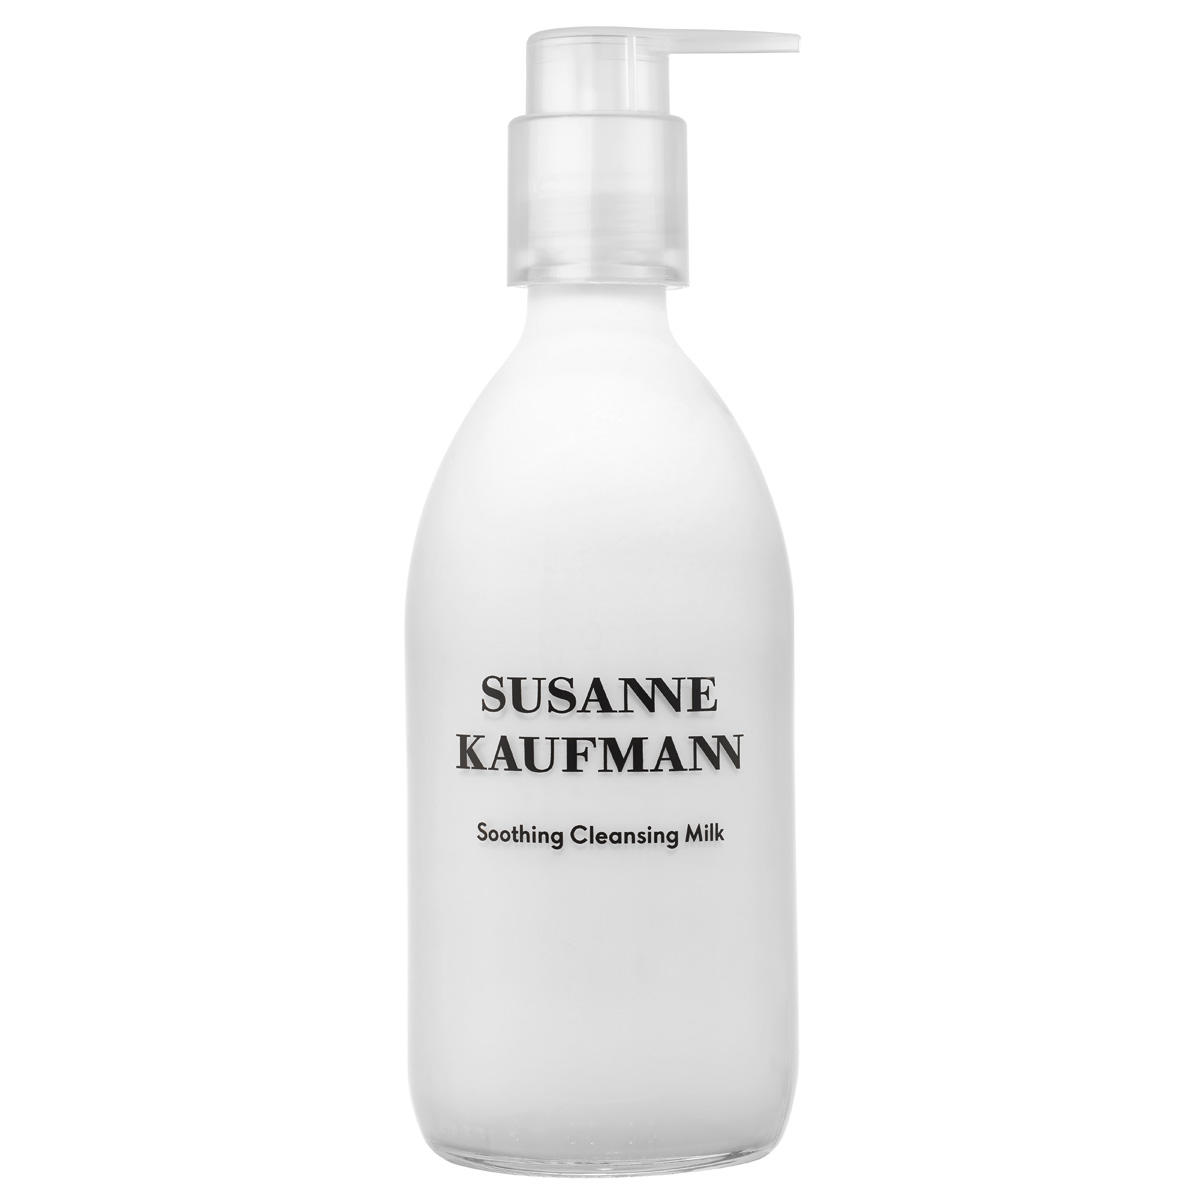 Susanne Kaufmann lait de toilette - Soothing Cleansing Milk  - 1